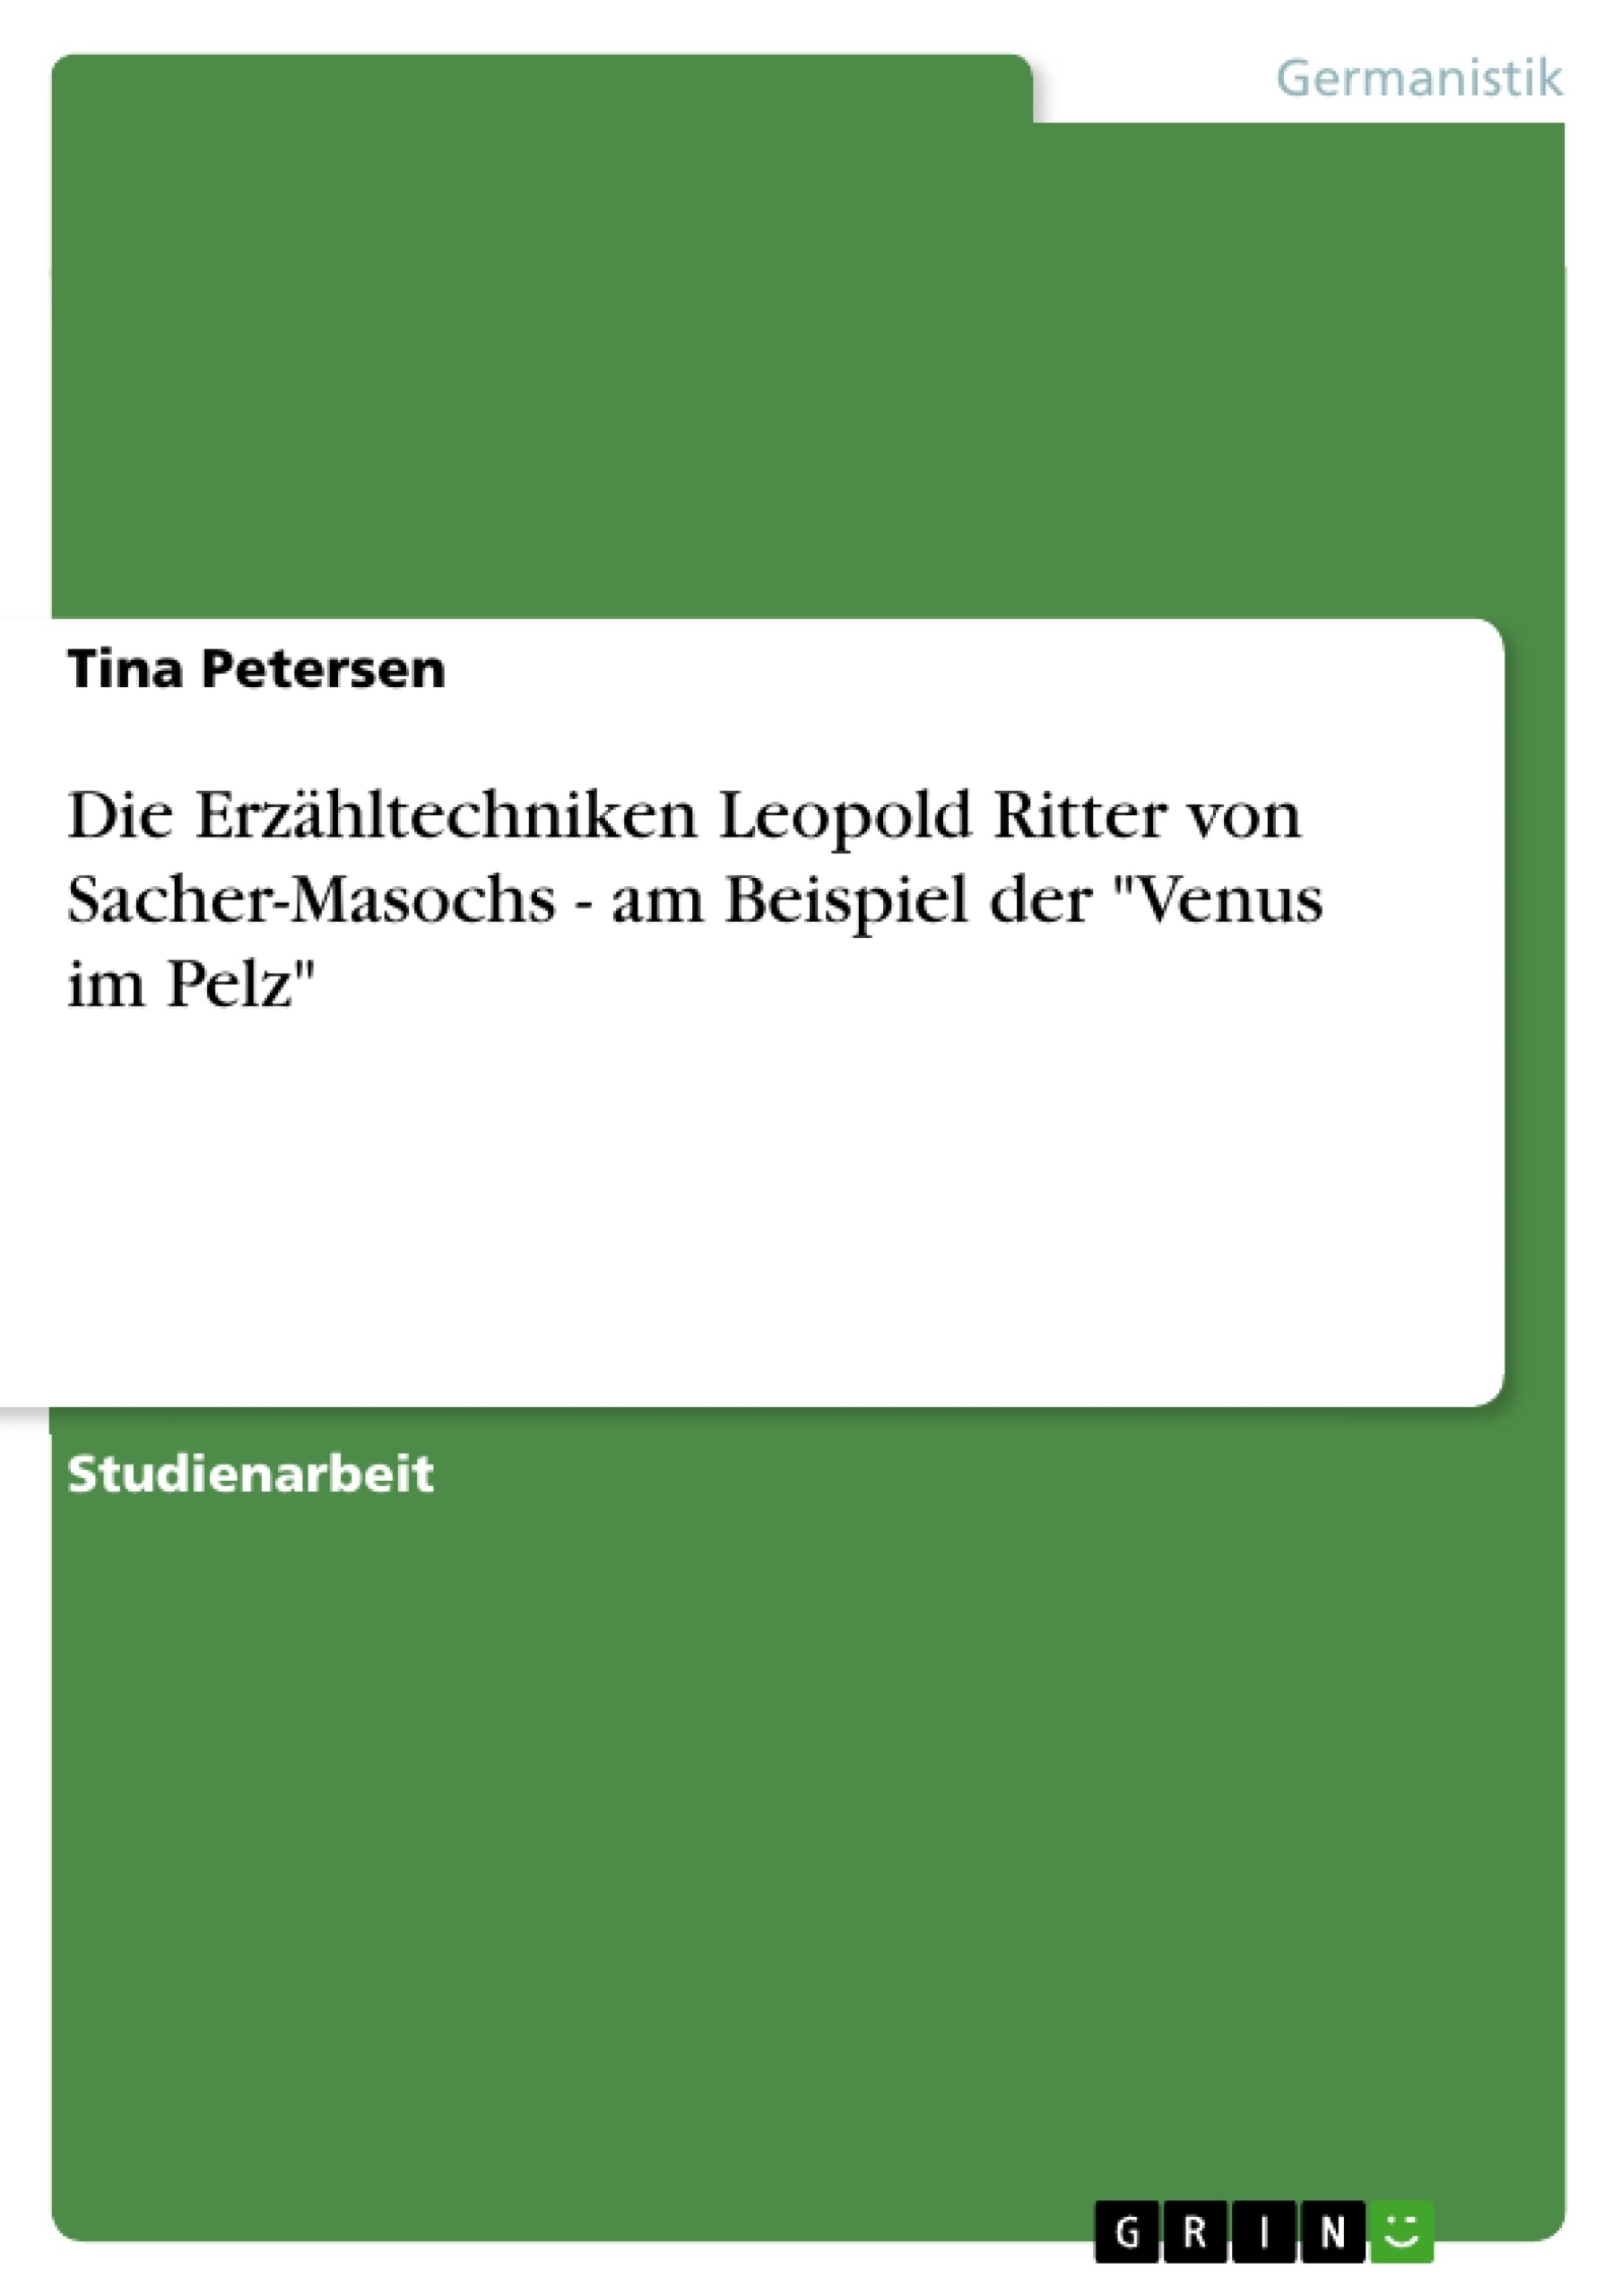 Title: Die Erzähltechniken Leopold Ritter von Sacher-Masochs - am Beispiel der "Venus im Pelz"